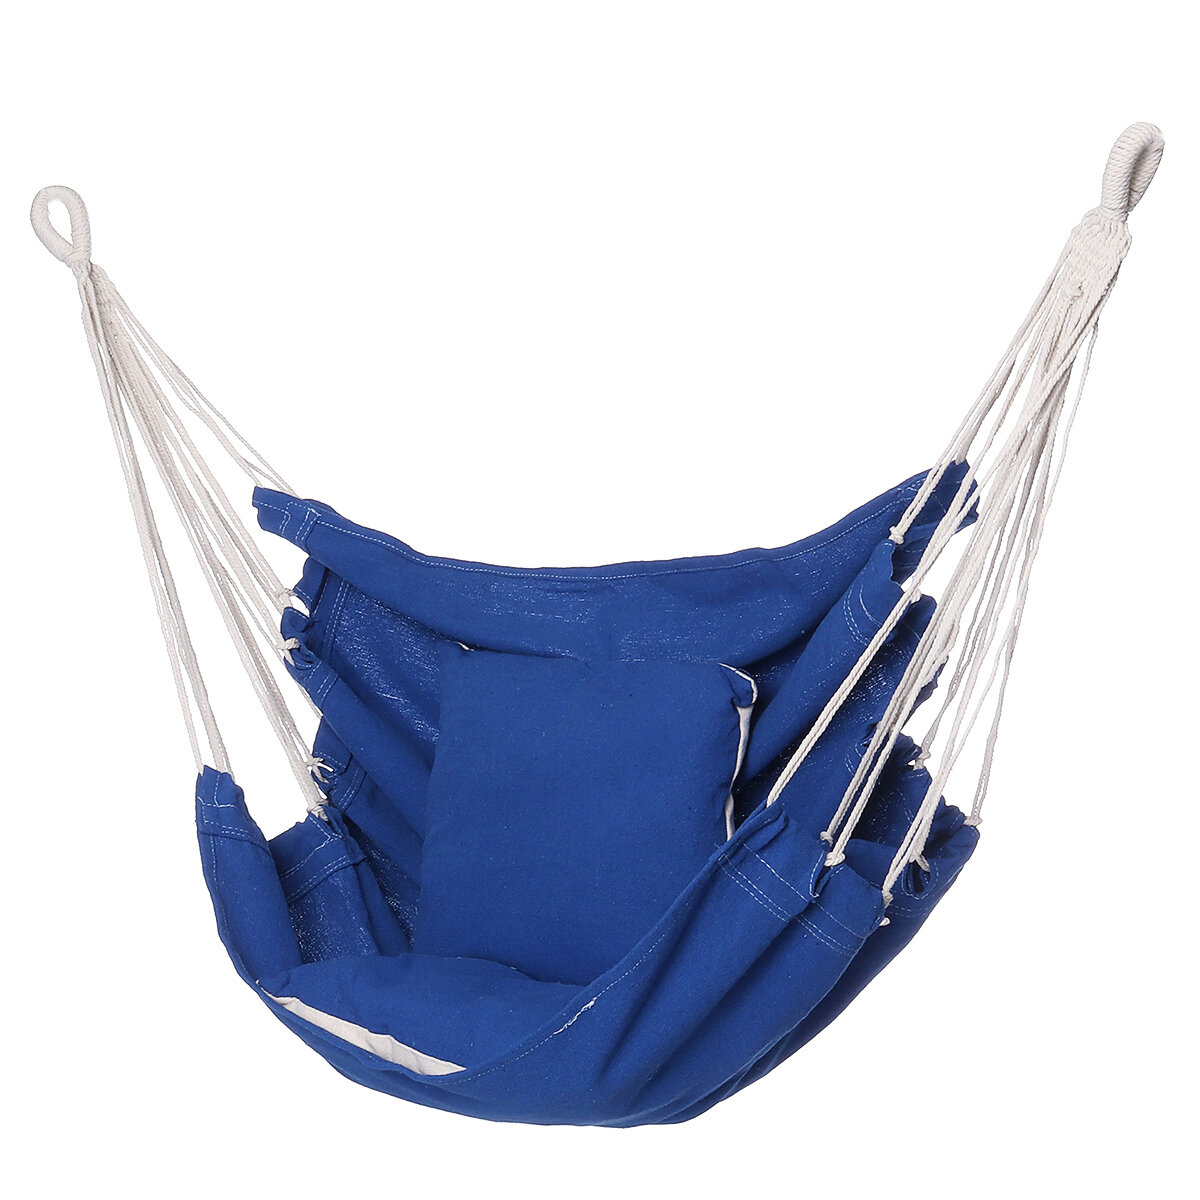 Chaise hamac de camping Siège de balançoire Chaise suspendue pliante extérieure intérieure avec corde Cordes